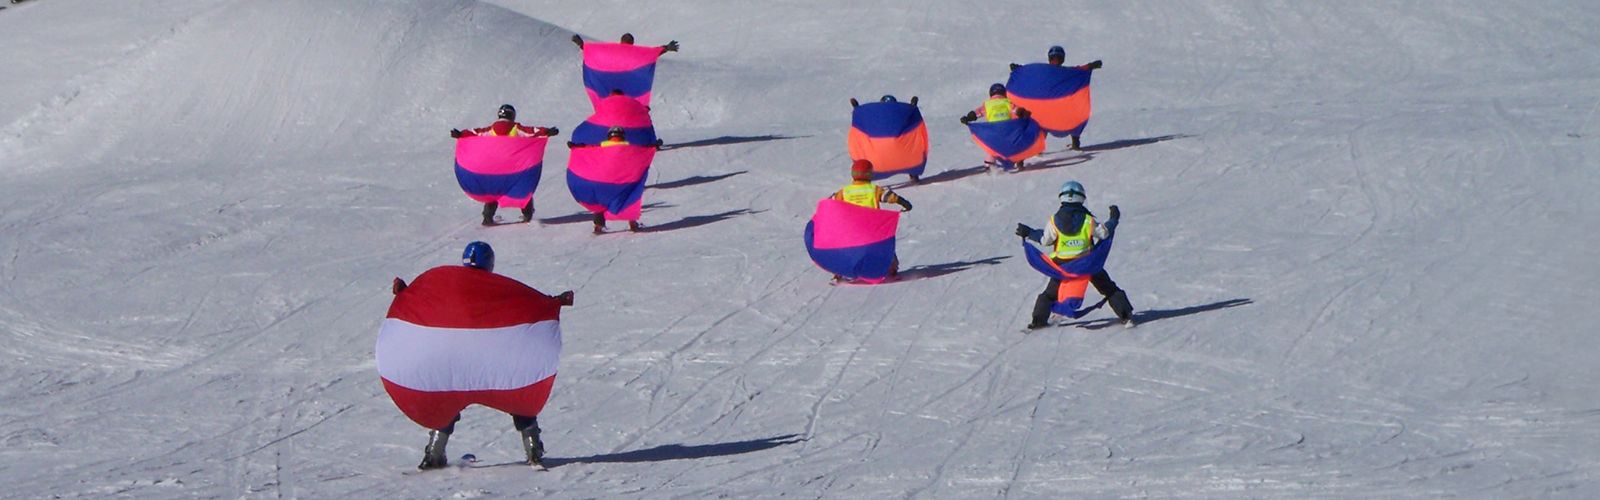 Skischule Mayrhofen 3000 Kinderunterricht